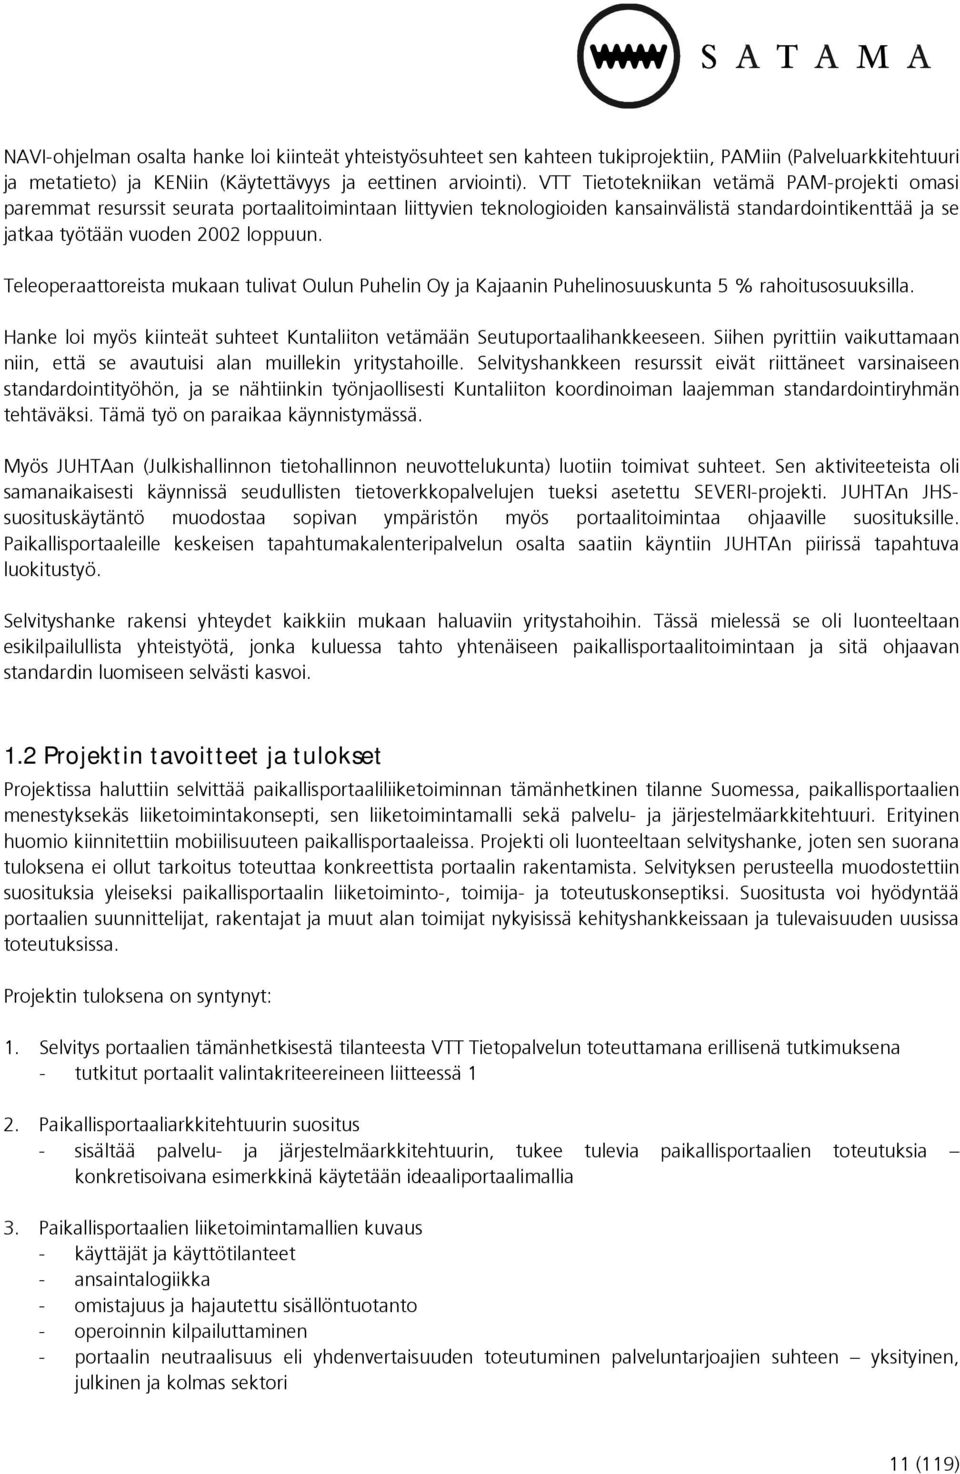 Teleoperaattoreista mukaan tulivat Oulun Puhelin Oy ja Kajaanin Puhelinosuuskunta 5 % rahoitusosuuksilla. Hanke loi myös kiinteät suhteet Kuntaliiton vetämään Seutuportaalihankkeeseen.